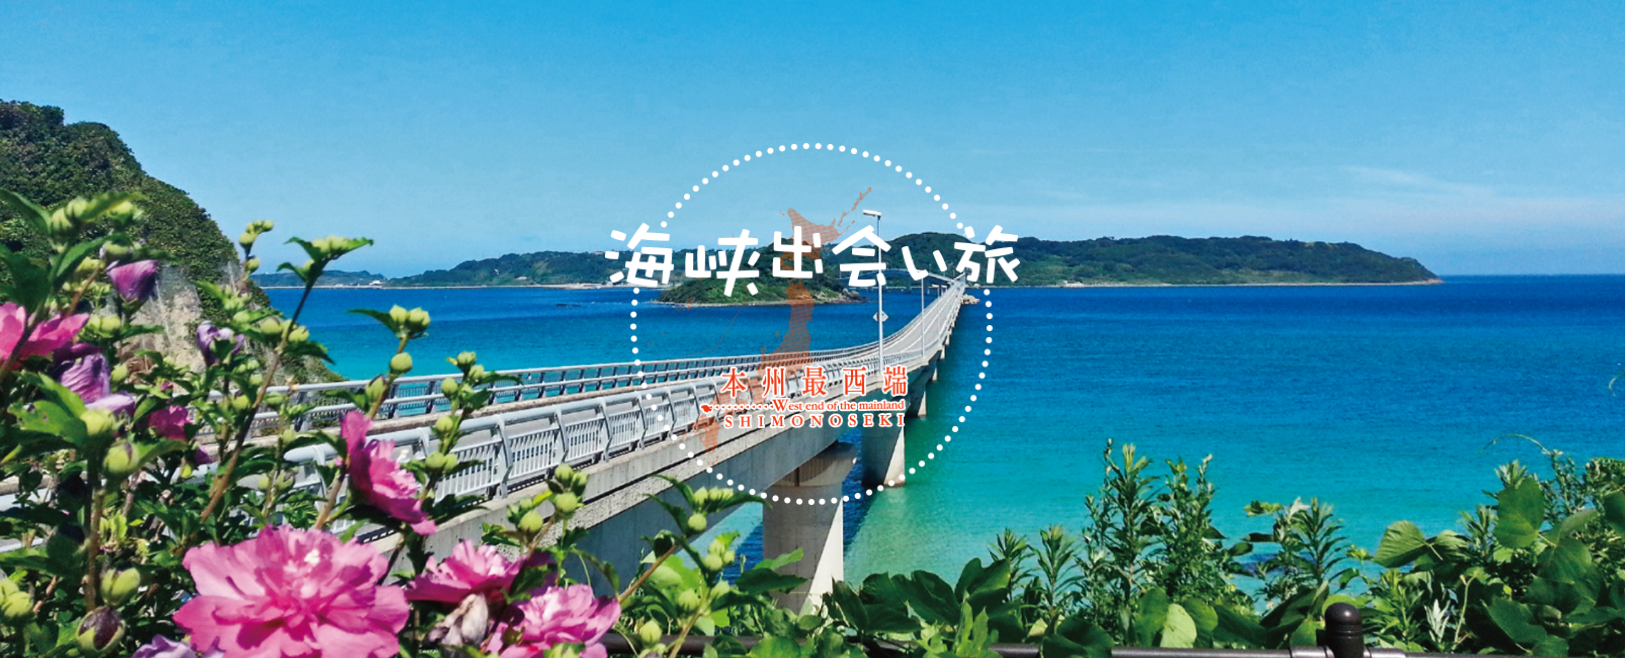 巌流島コース 下関観光ガイドブック 海峡出会い旅 Web版